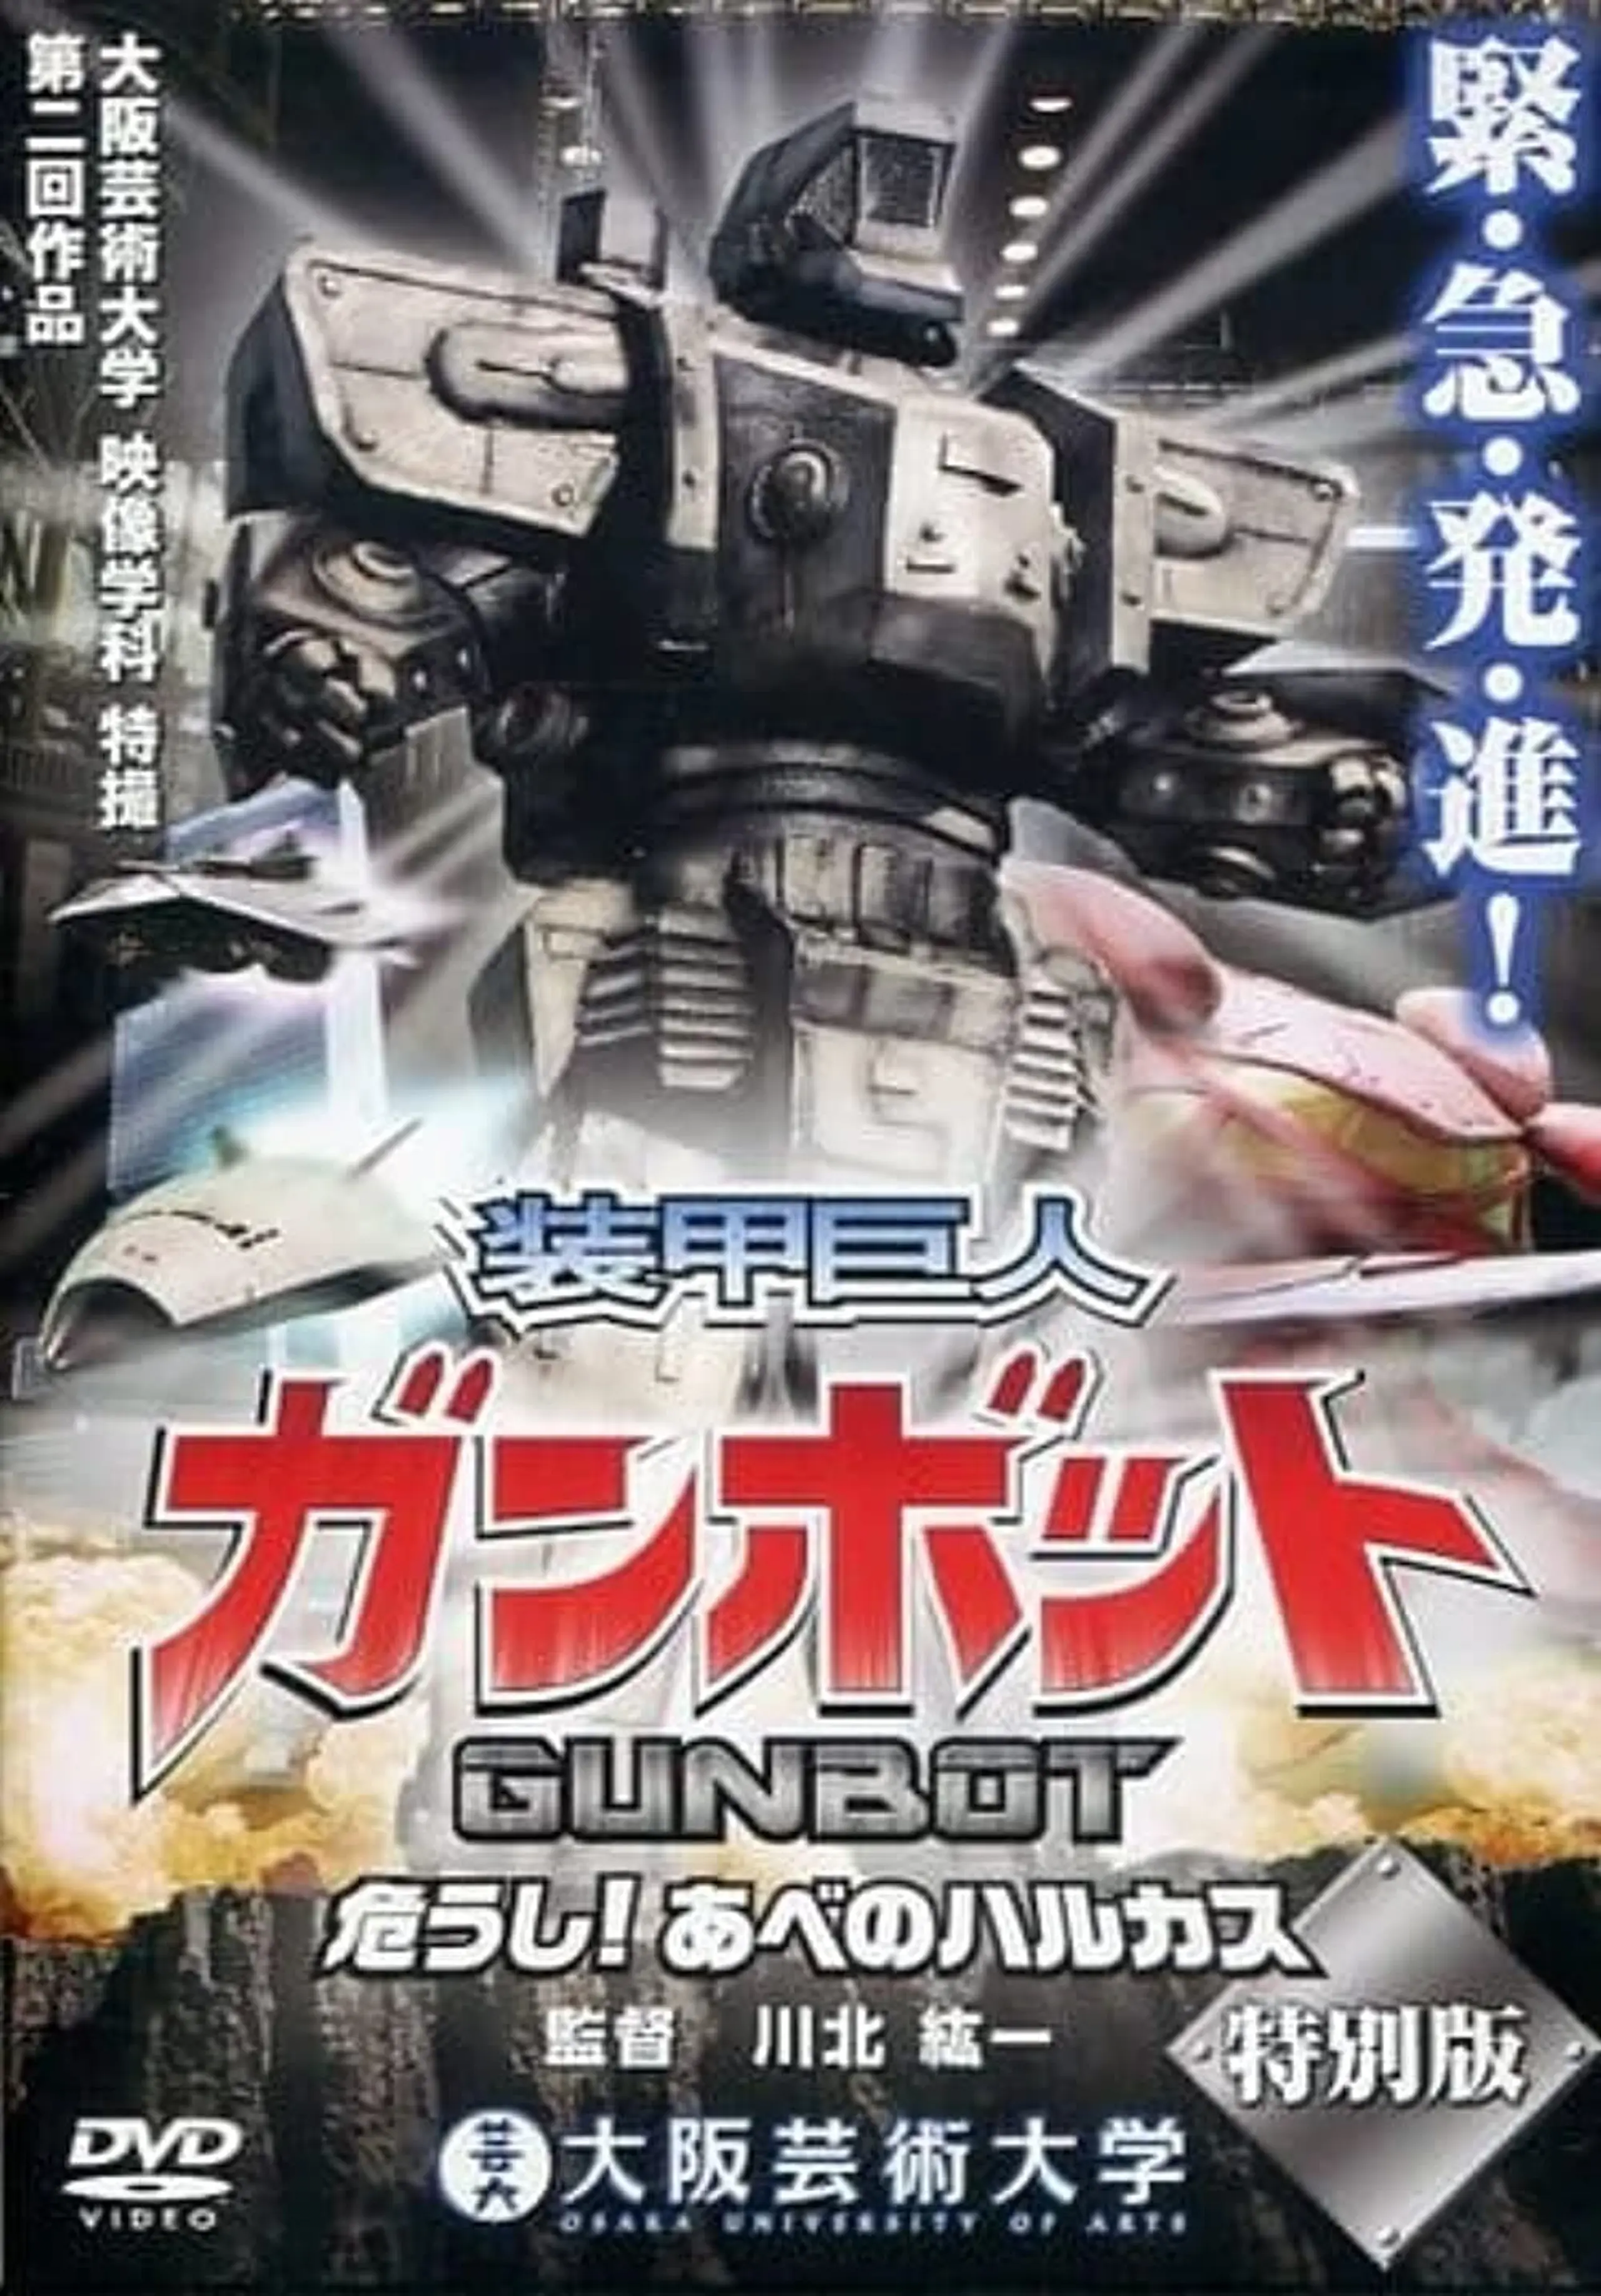 Armored Giant Gunbot